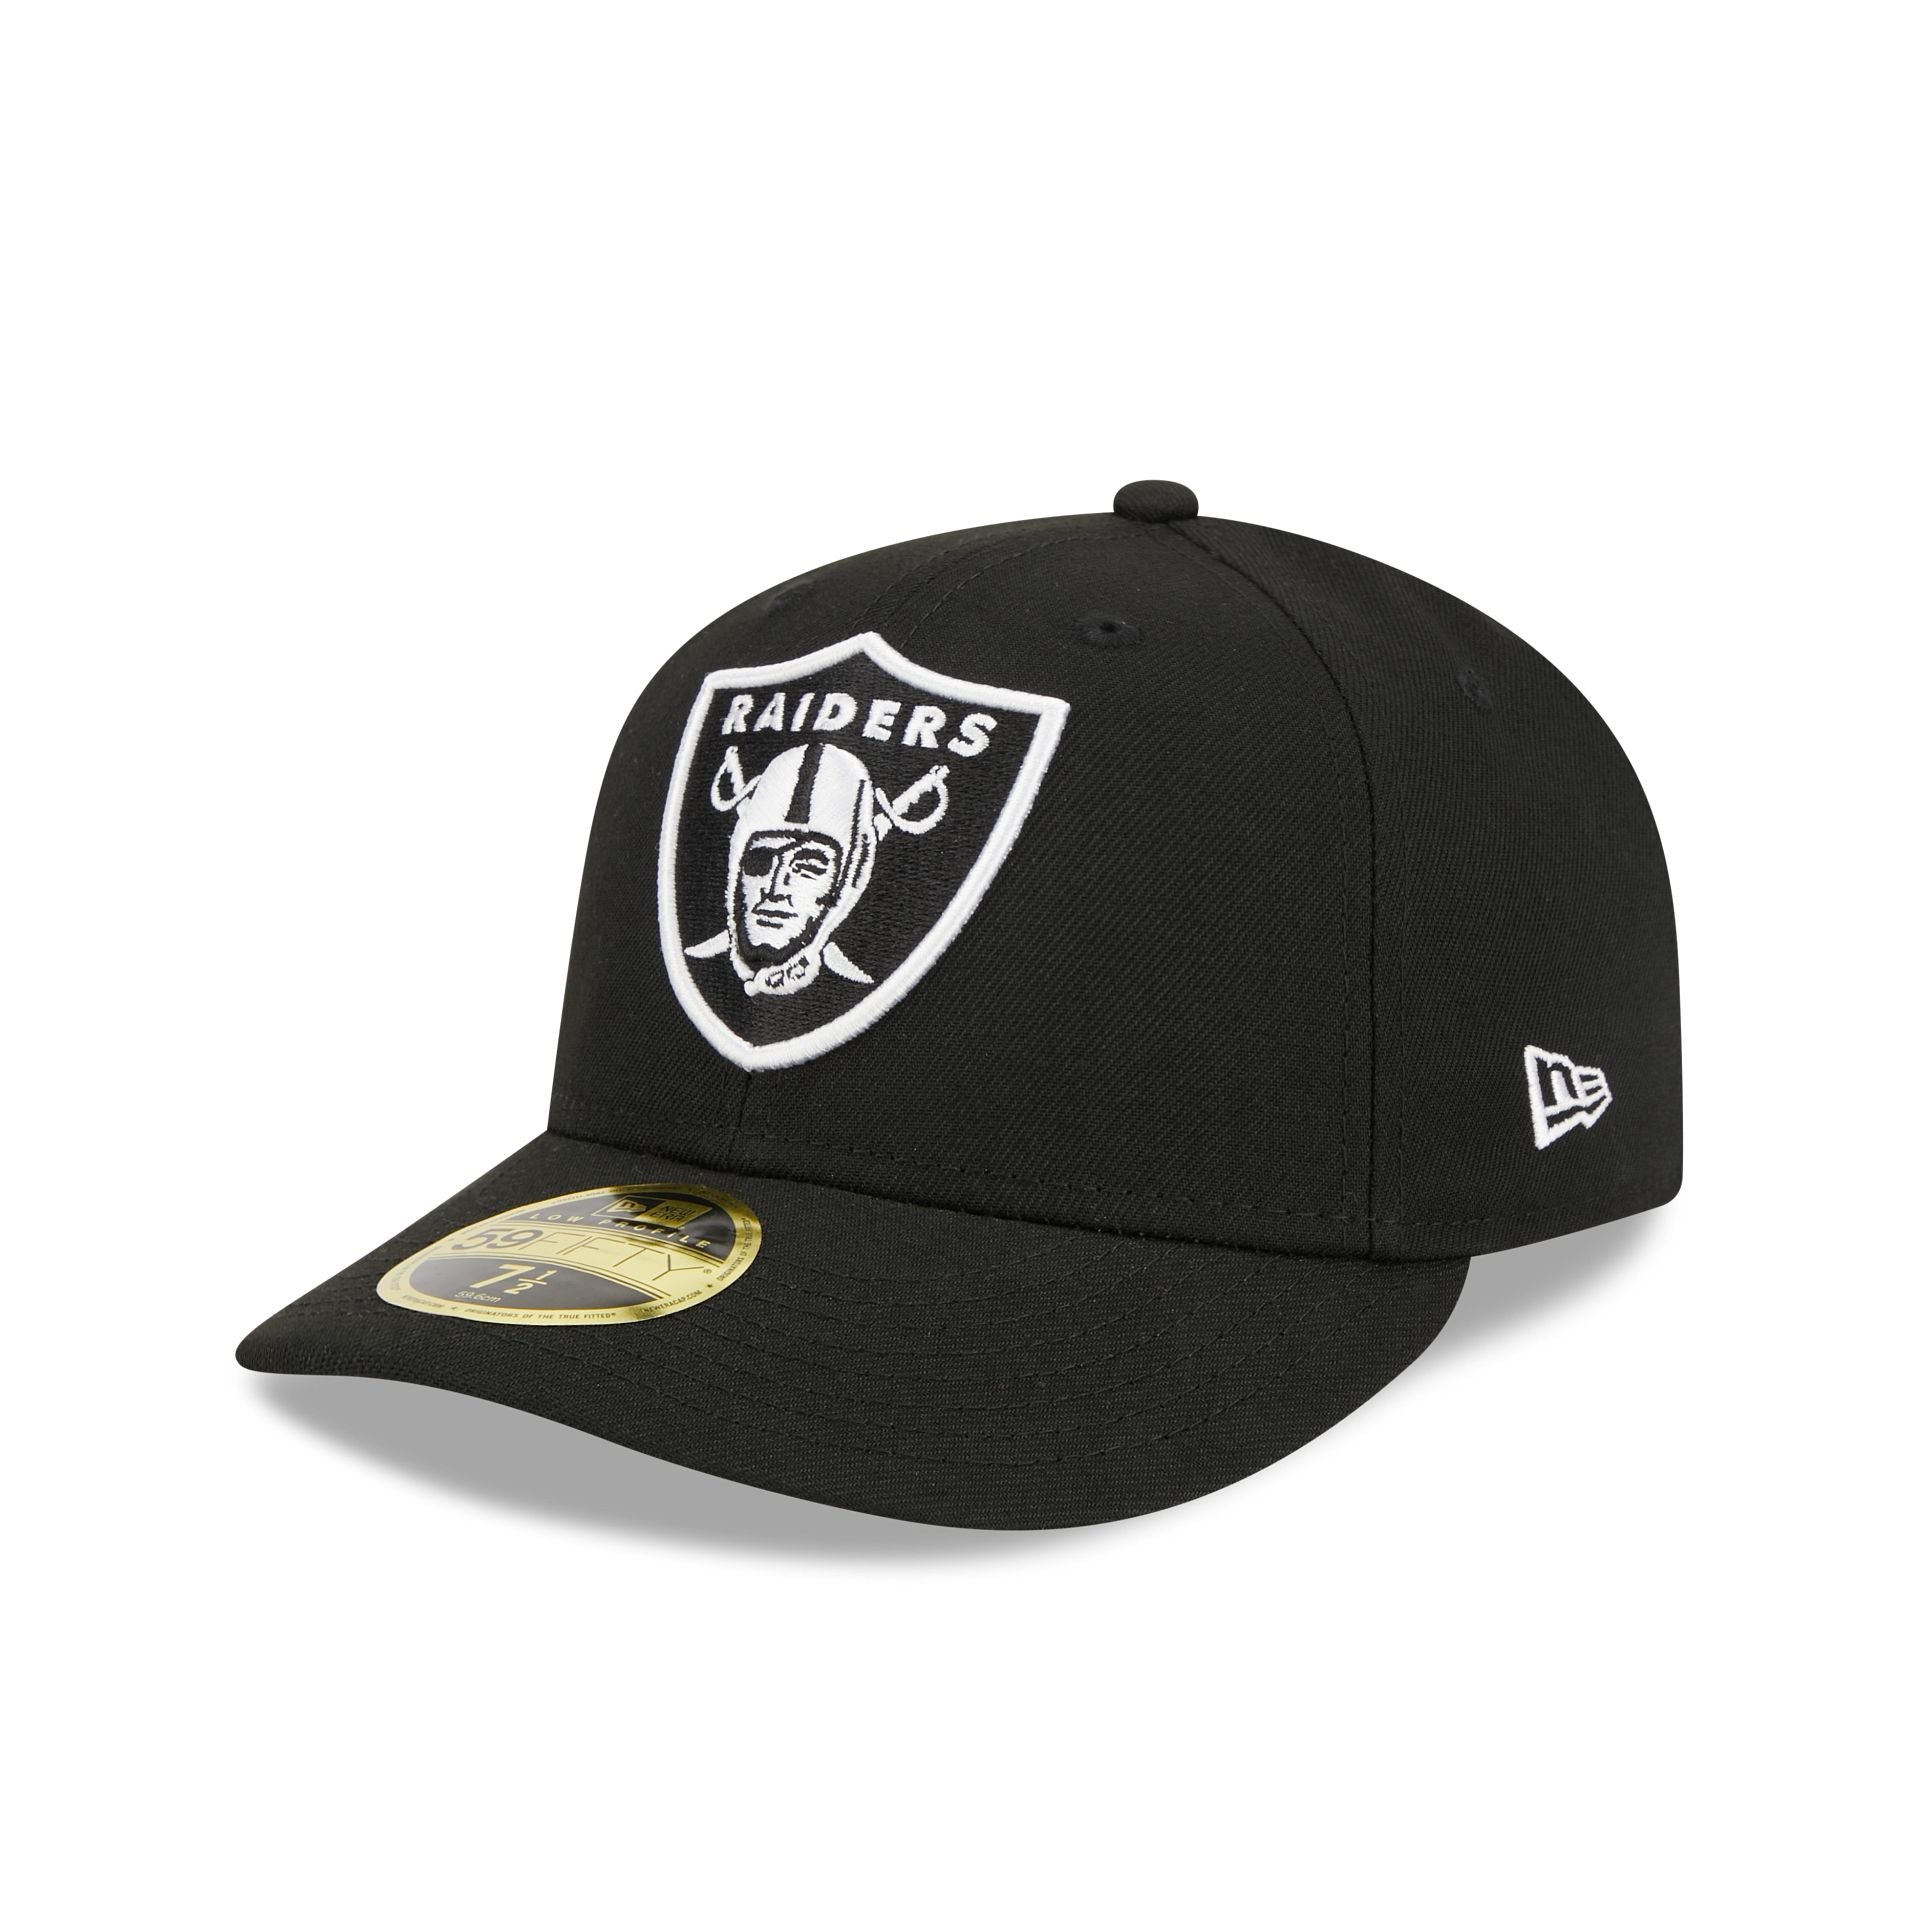 Raiders New Era Hat 